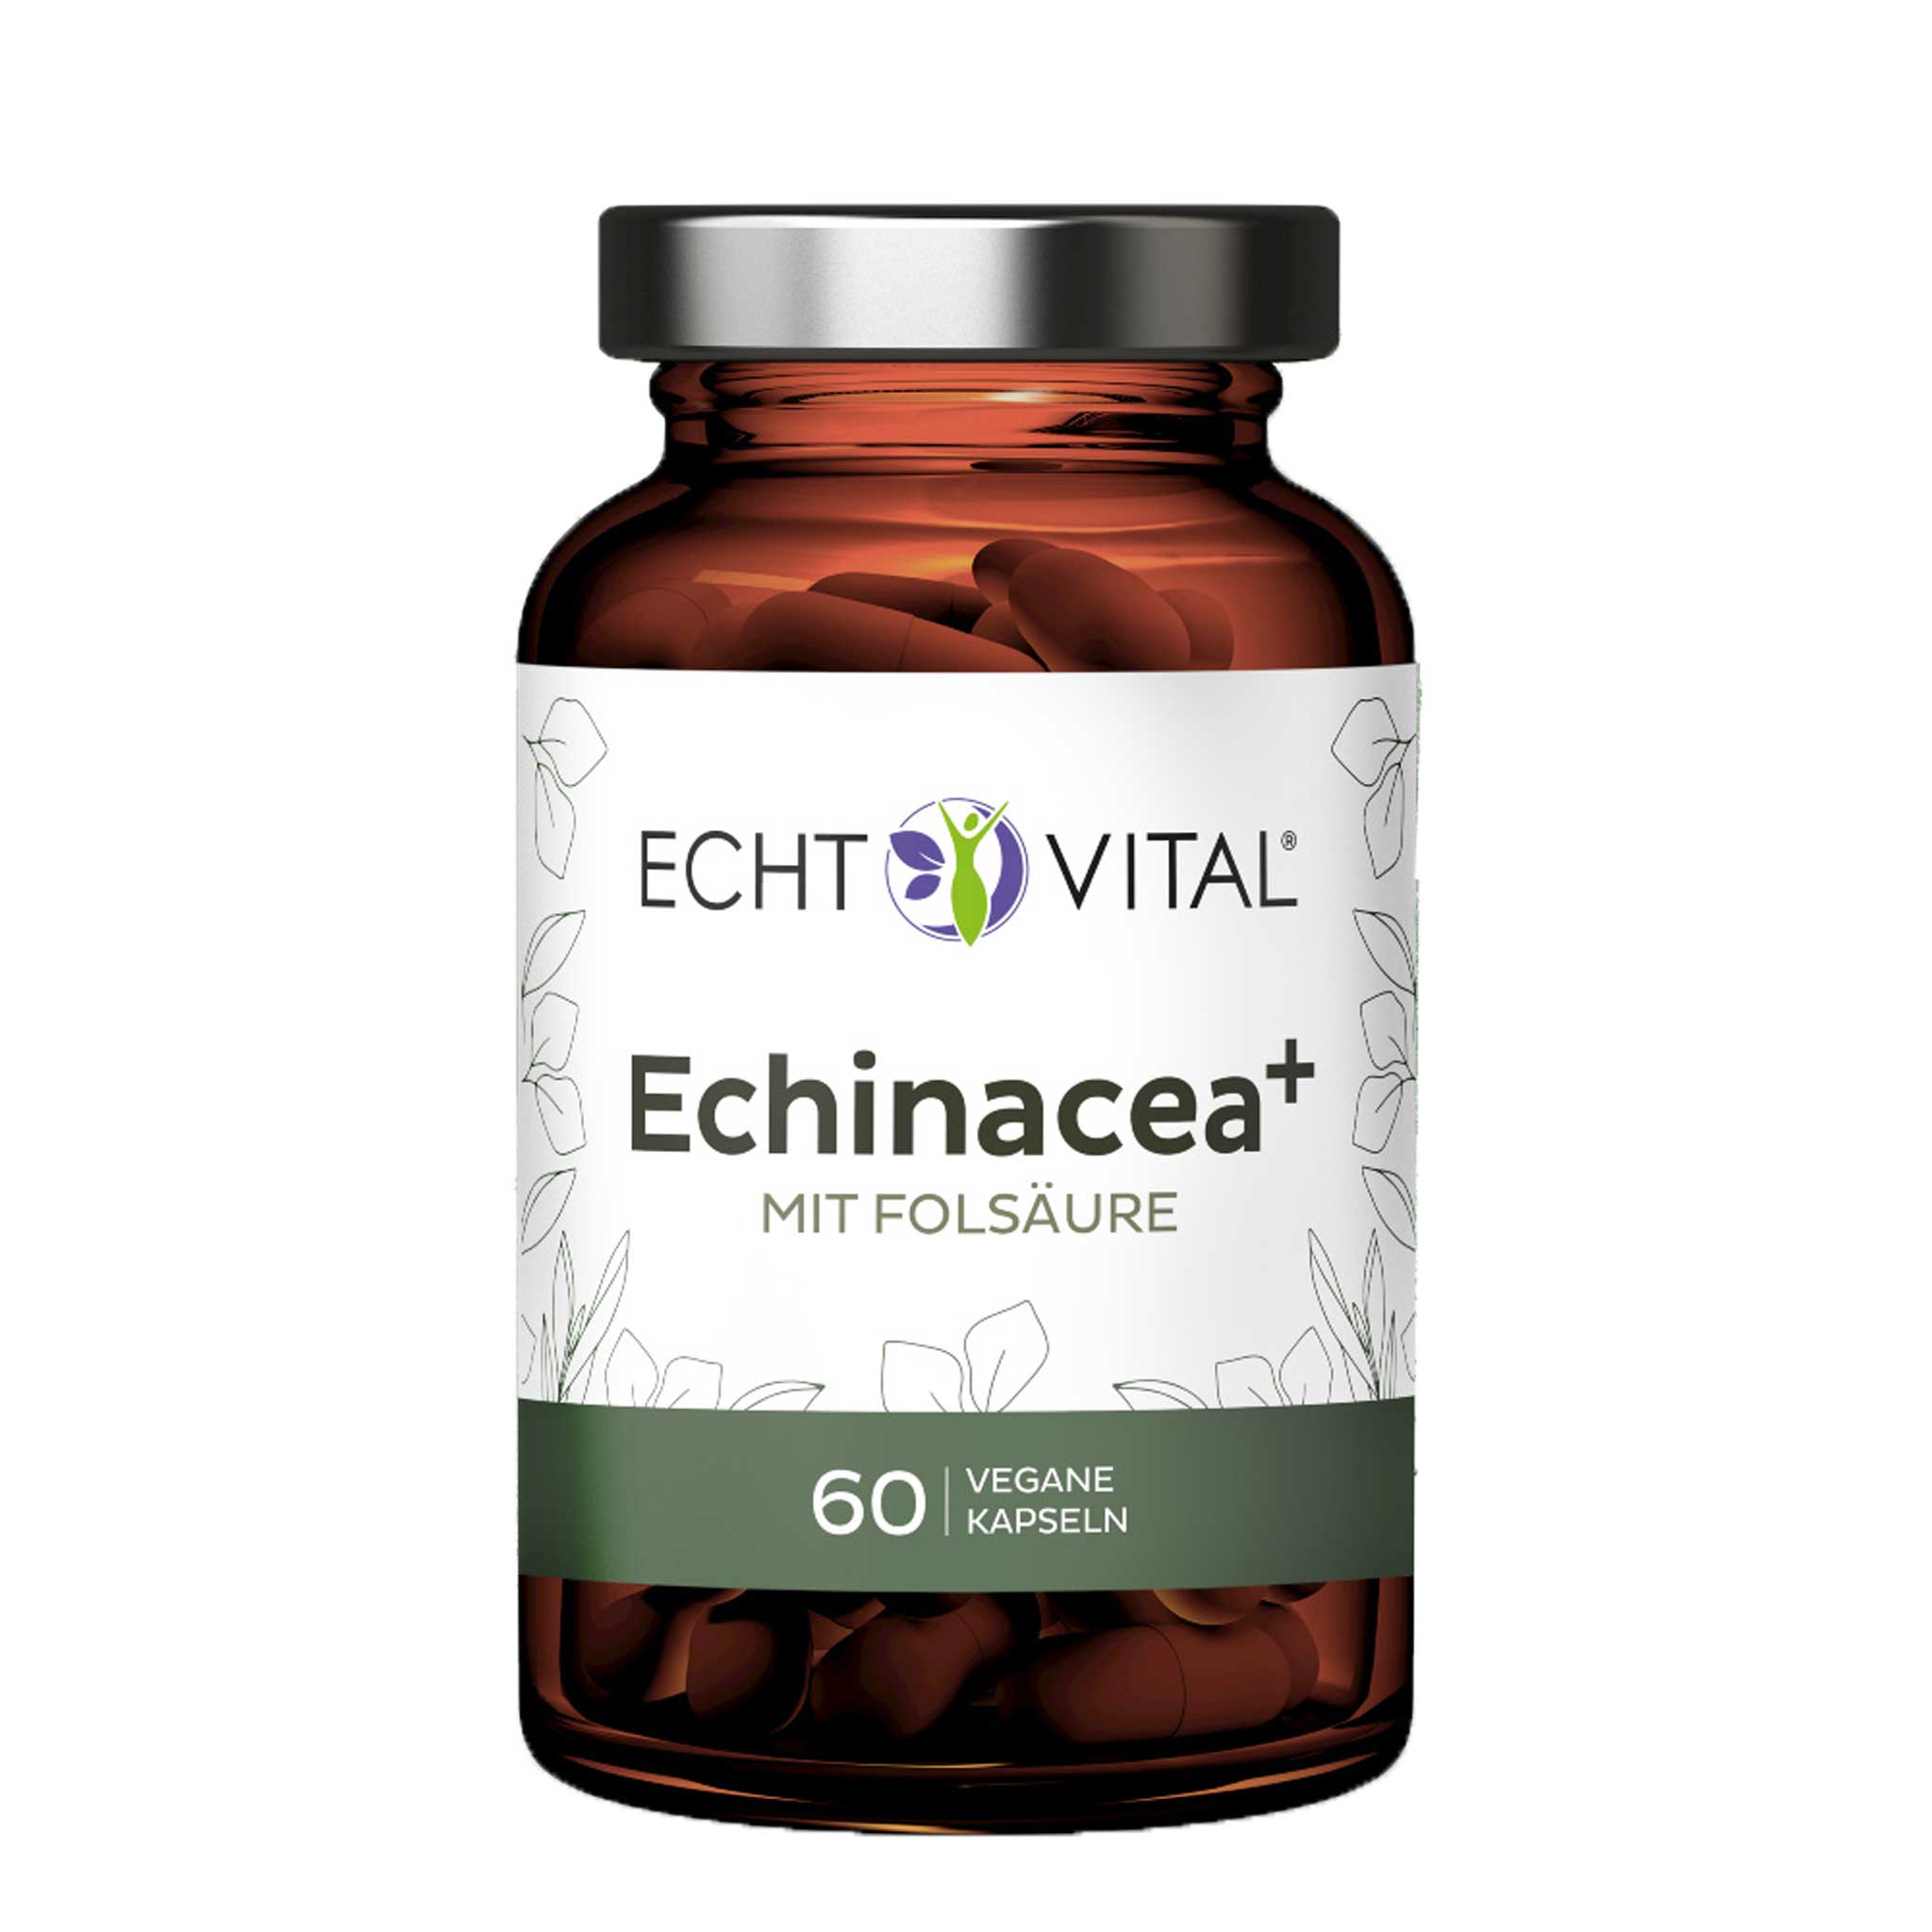 Echinacea + mit Folsäure von Echt Vital beinhaltet 60 vegane Kapseln